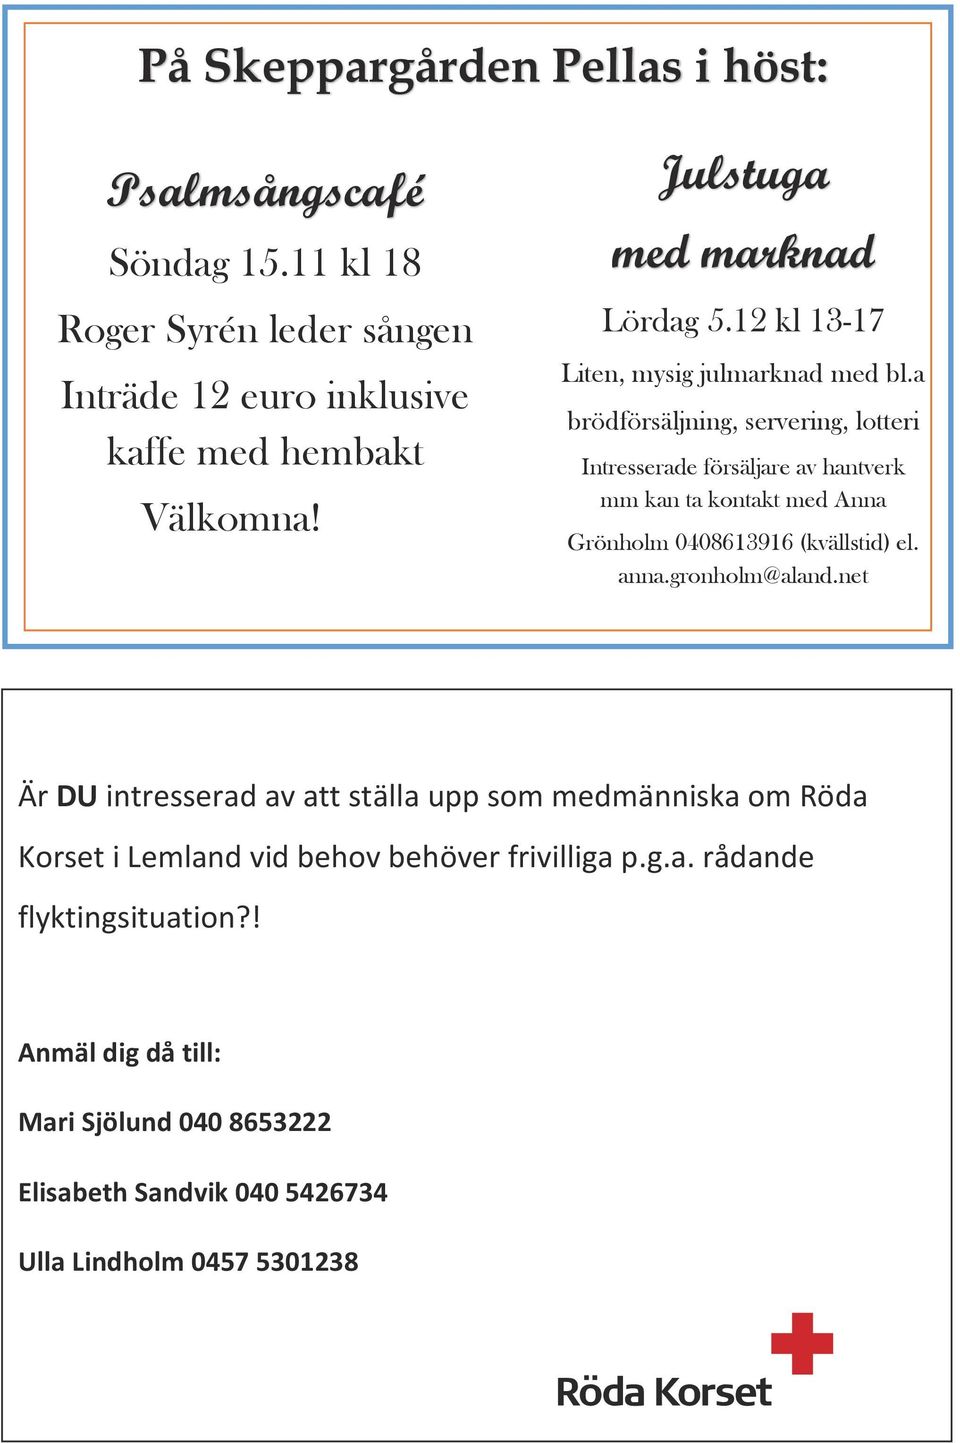 a brödförsäljning, servering, lotteri Intresserade försäljare av hantverk mm kan ta kontakt med Anna Grönholm 0408613916 (kvällstid) el. anna.